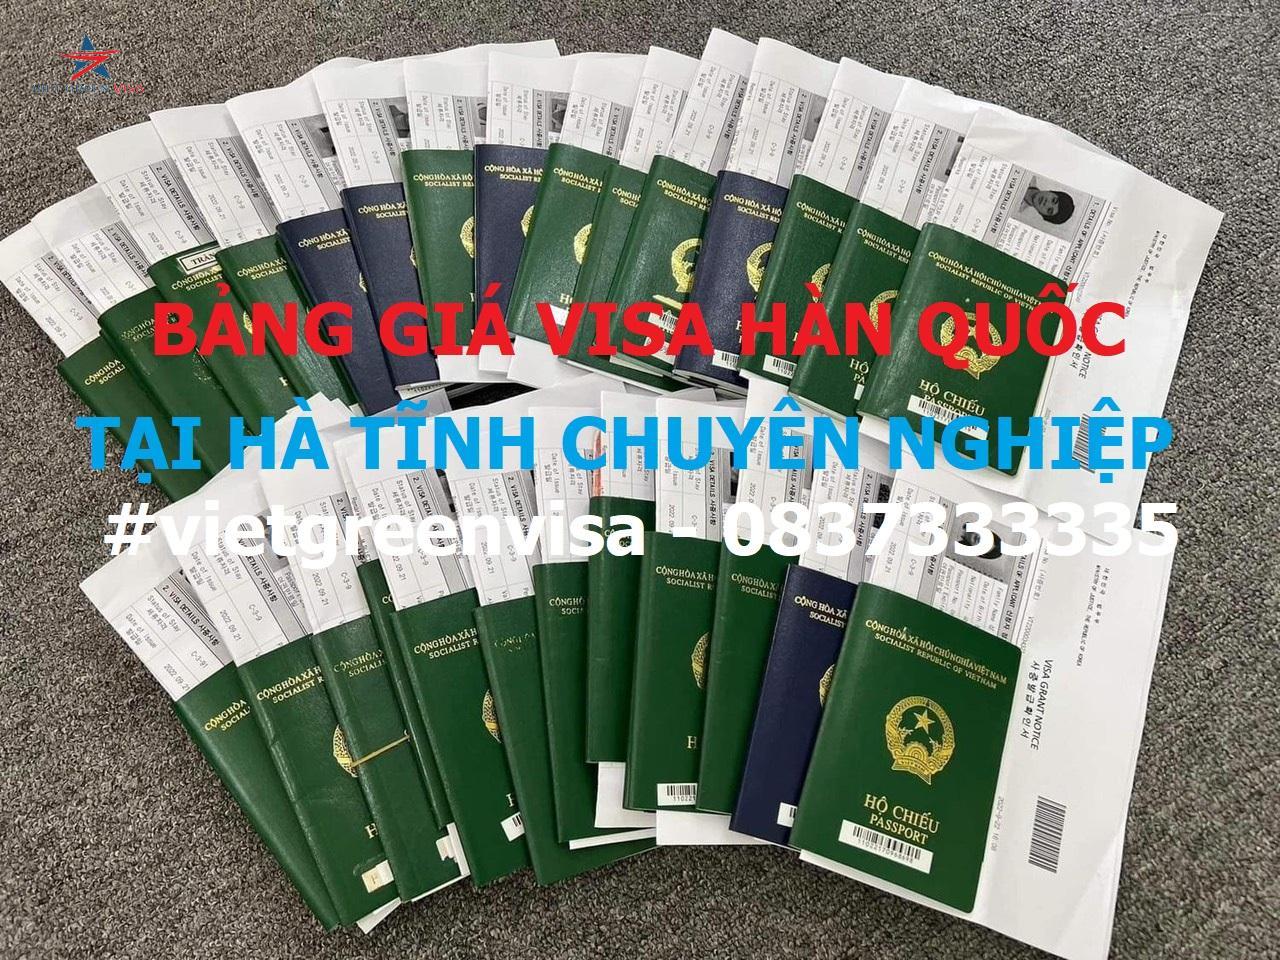 Dịch vụ xin visa Hàn Quốc tại Hà Tĩnh nhanh nhất